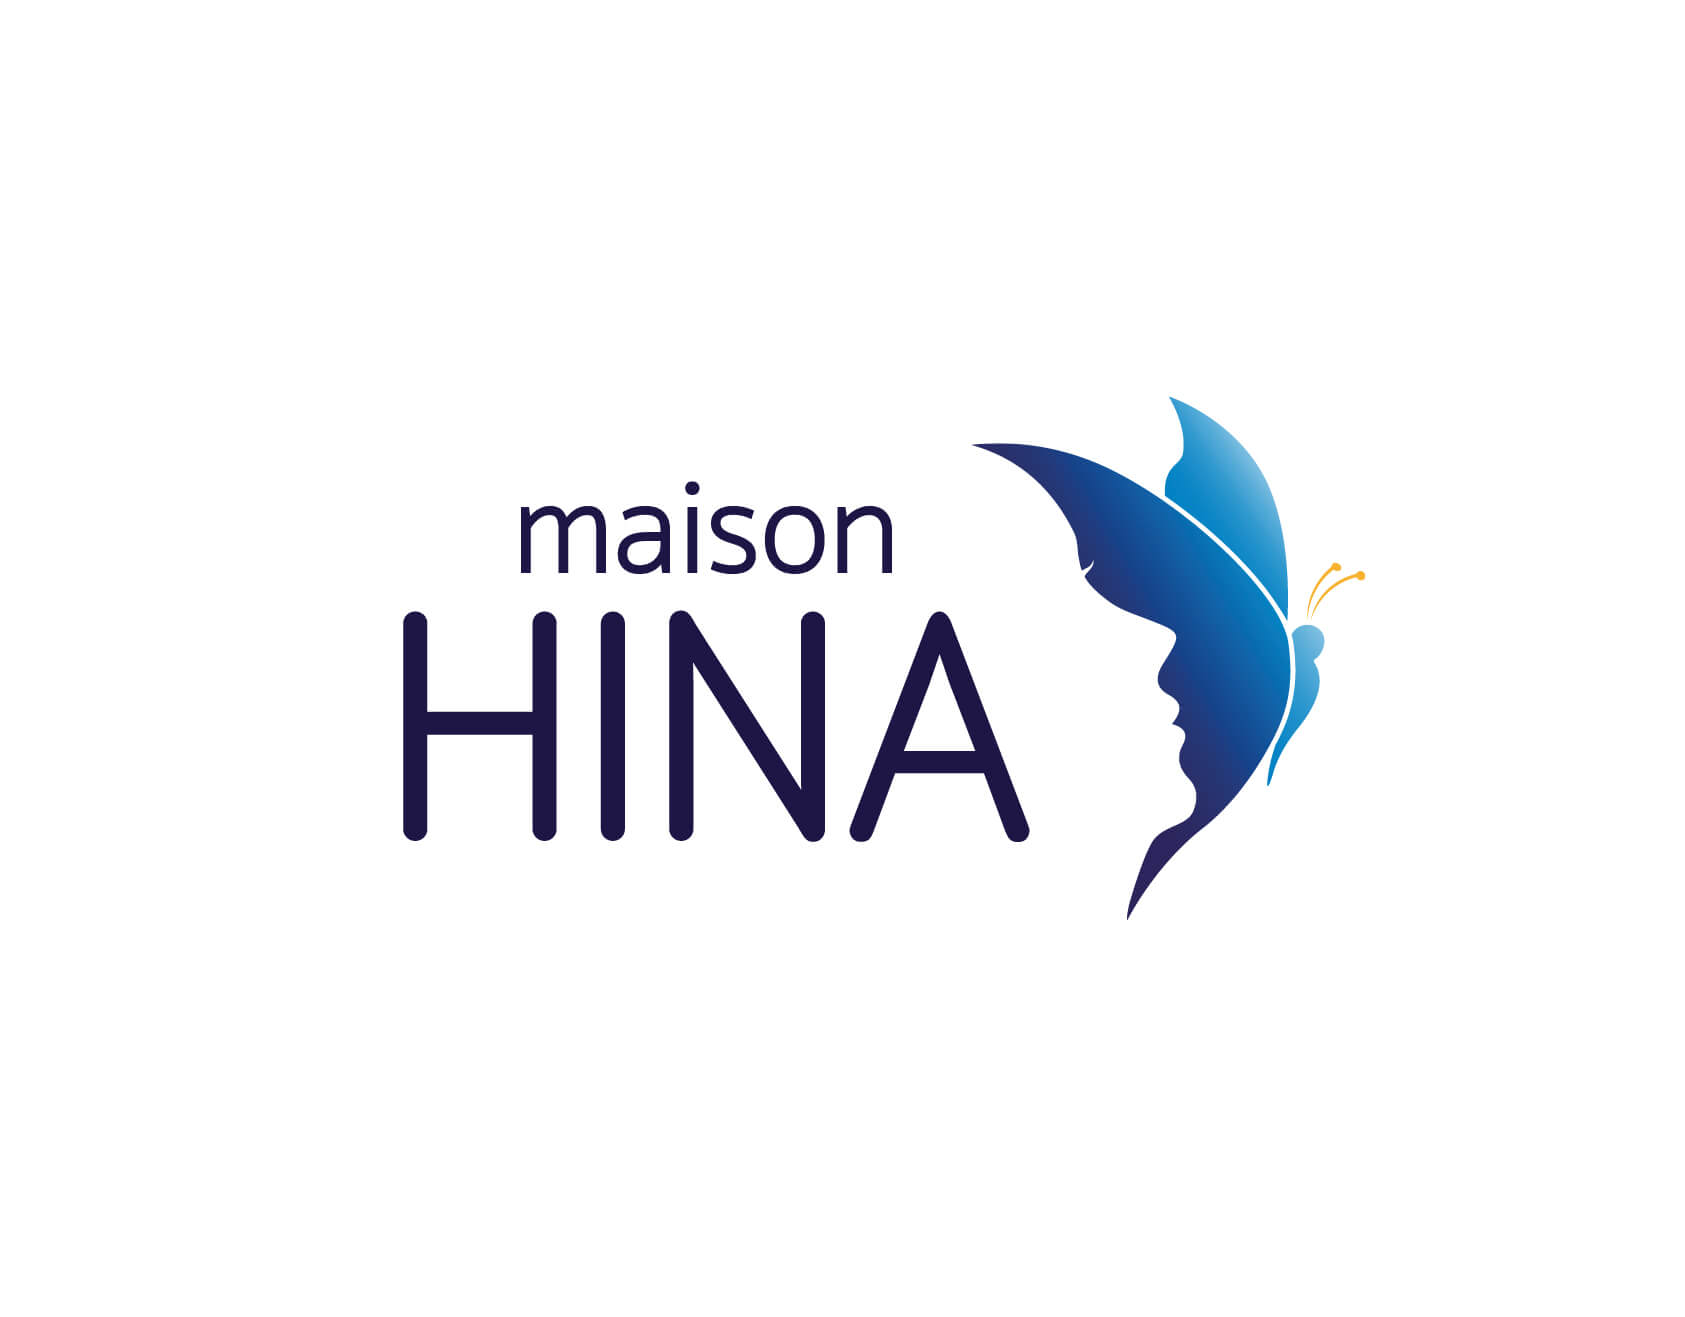 Image de marque, identité visuelle, logo de l'organisme Maison Hina, maison d'hébergement pour femmes et enfants victimes de violence